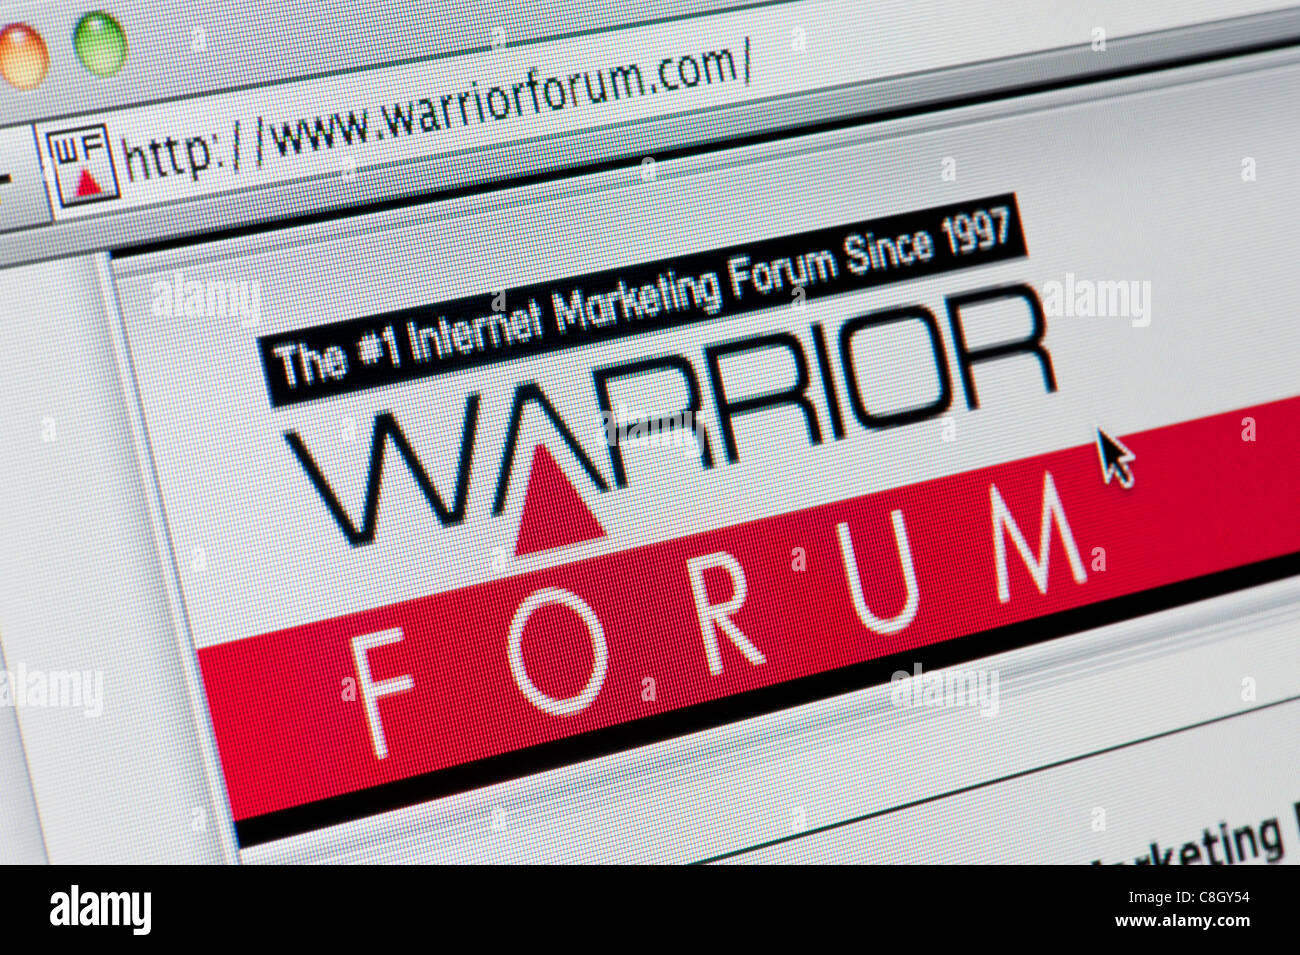 24 Hour Emergency Plumbing - Warrior Forum